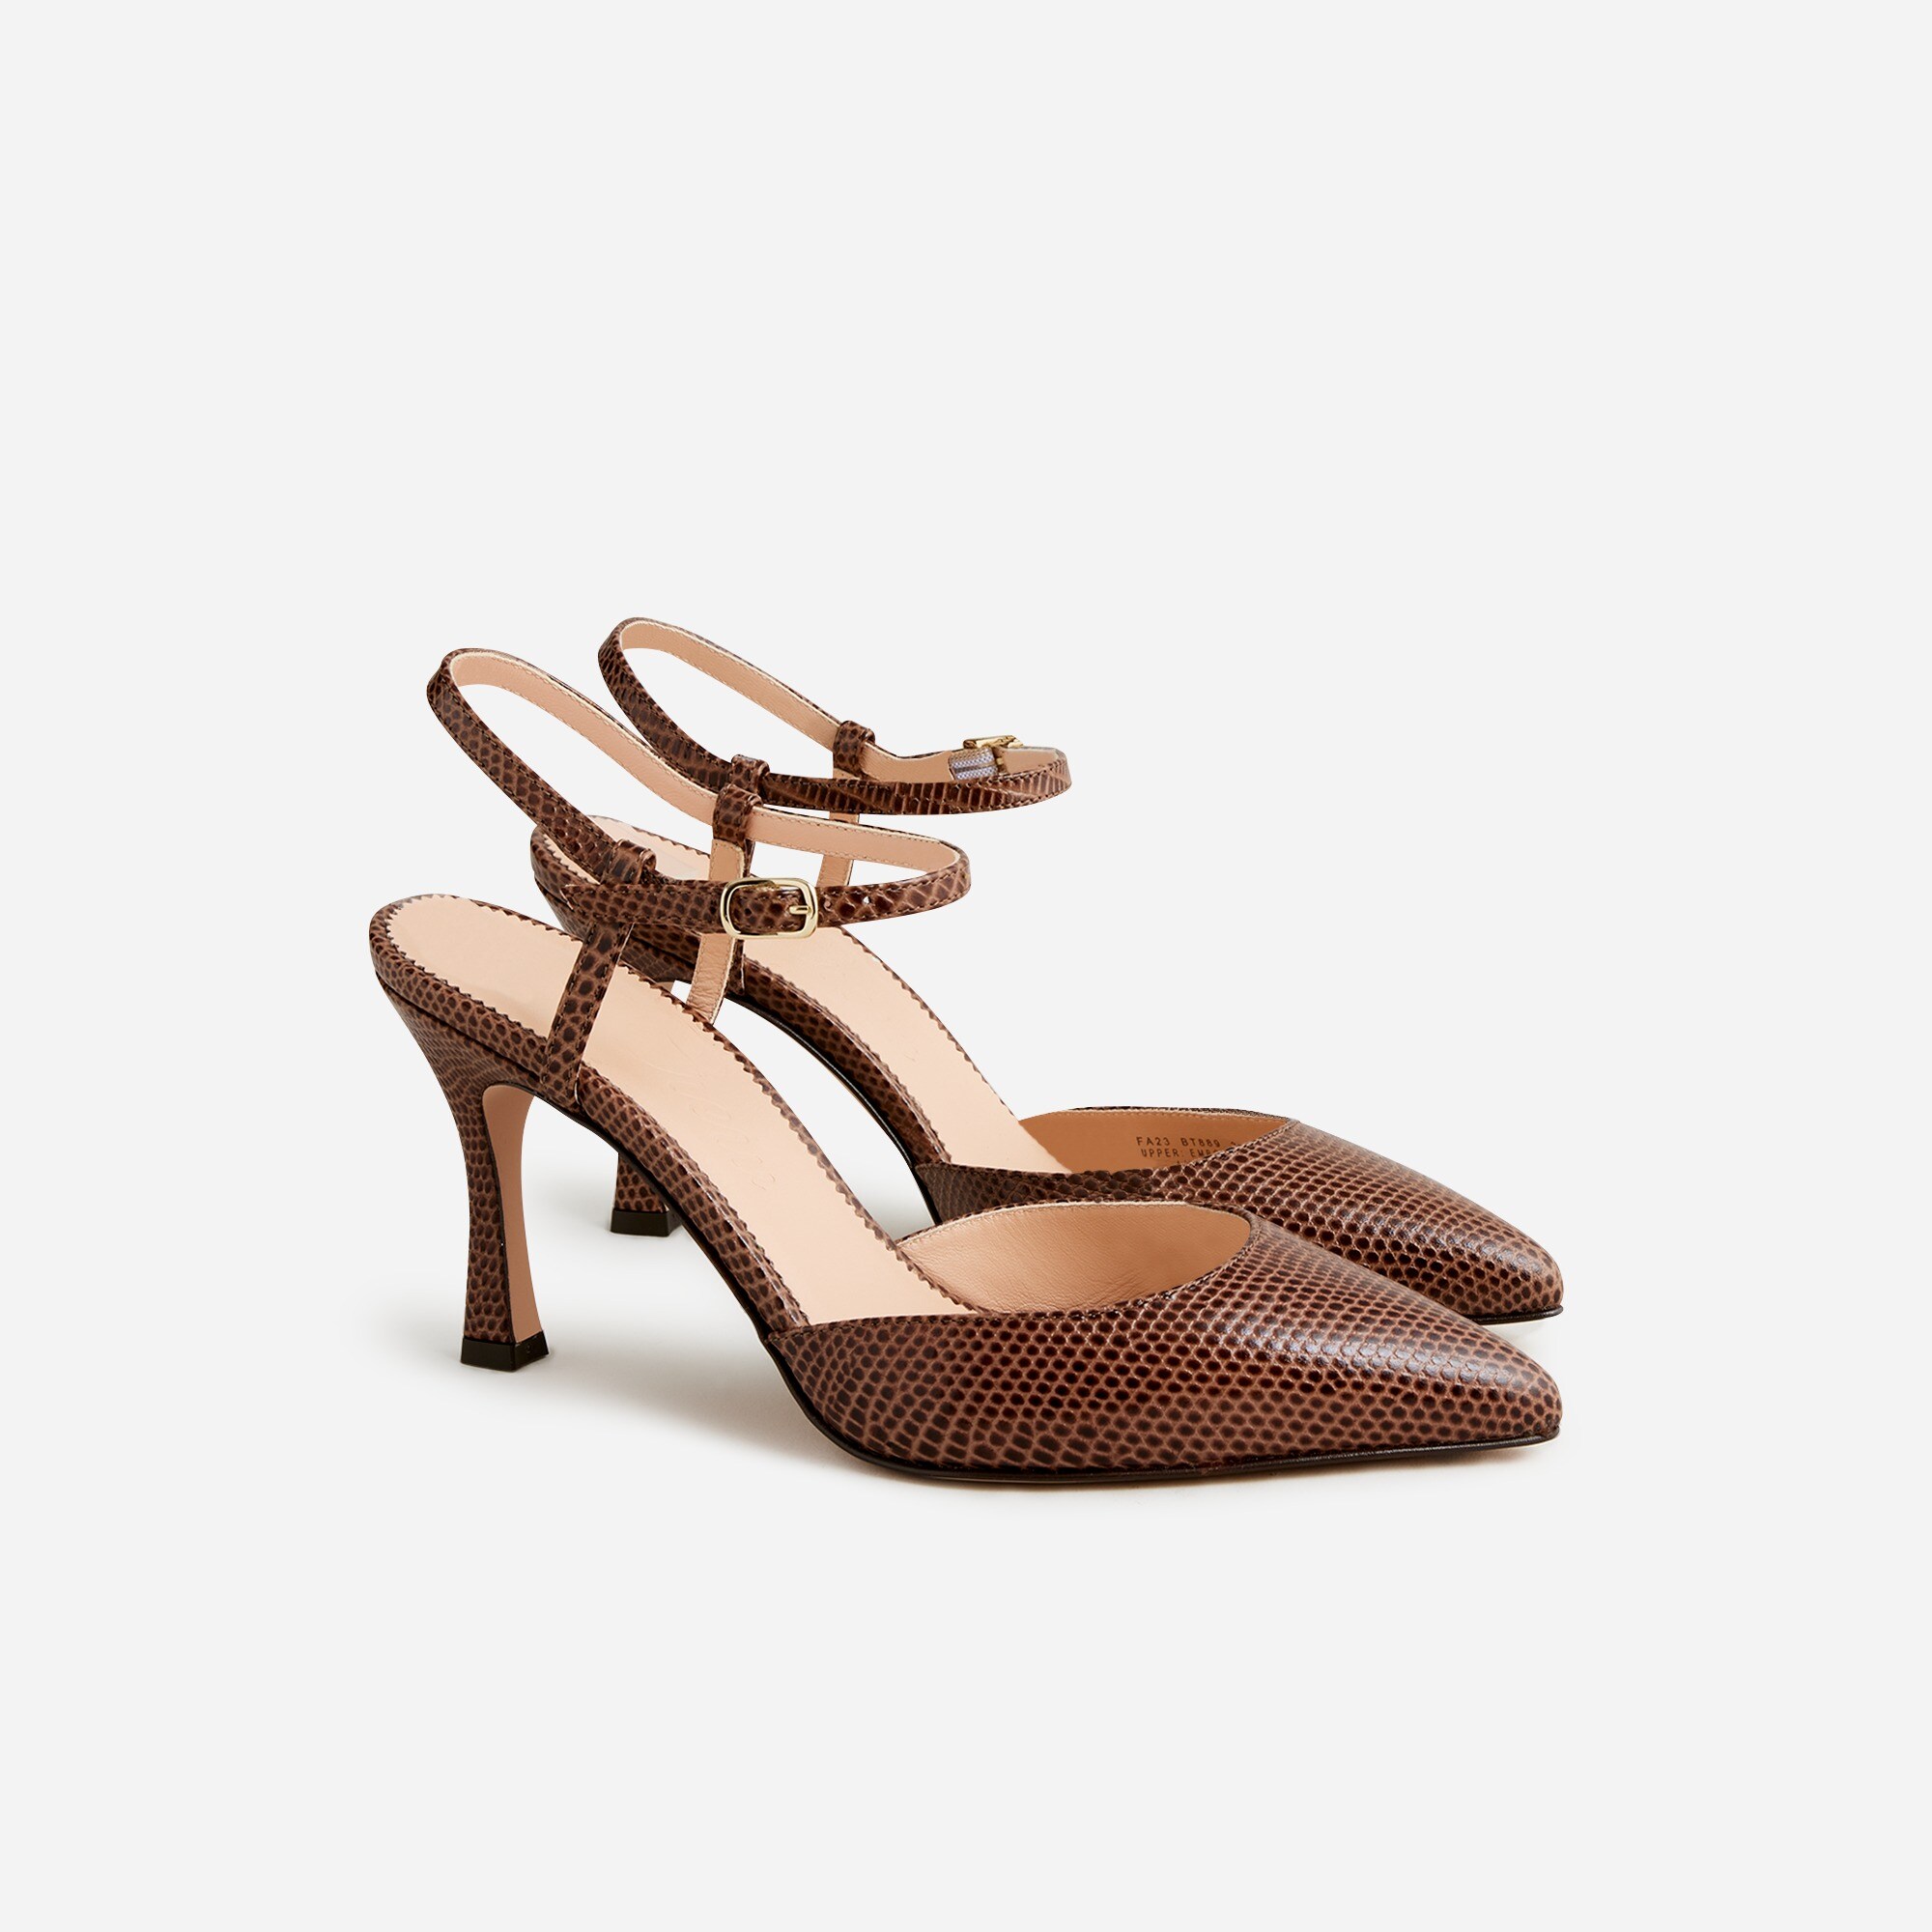  Elsie Made-in-Italy lizard-embossed leather heels